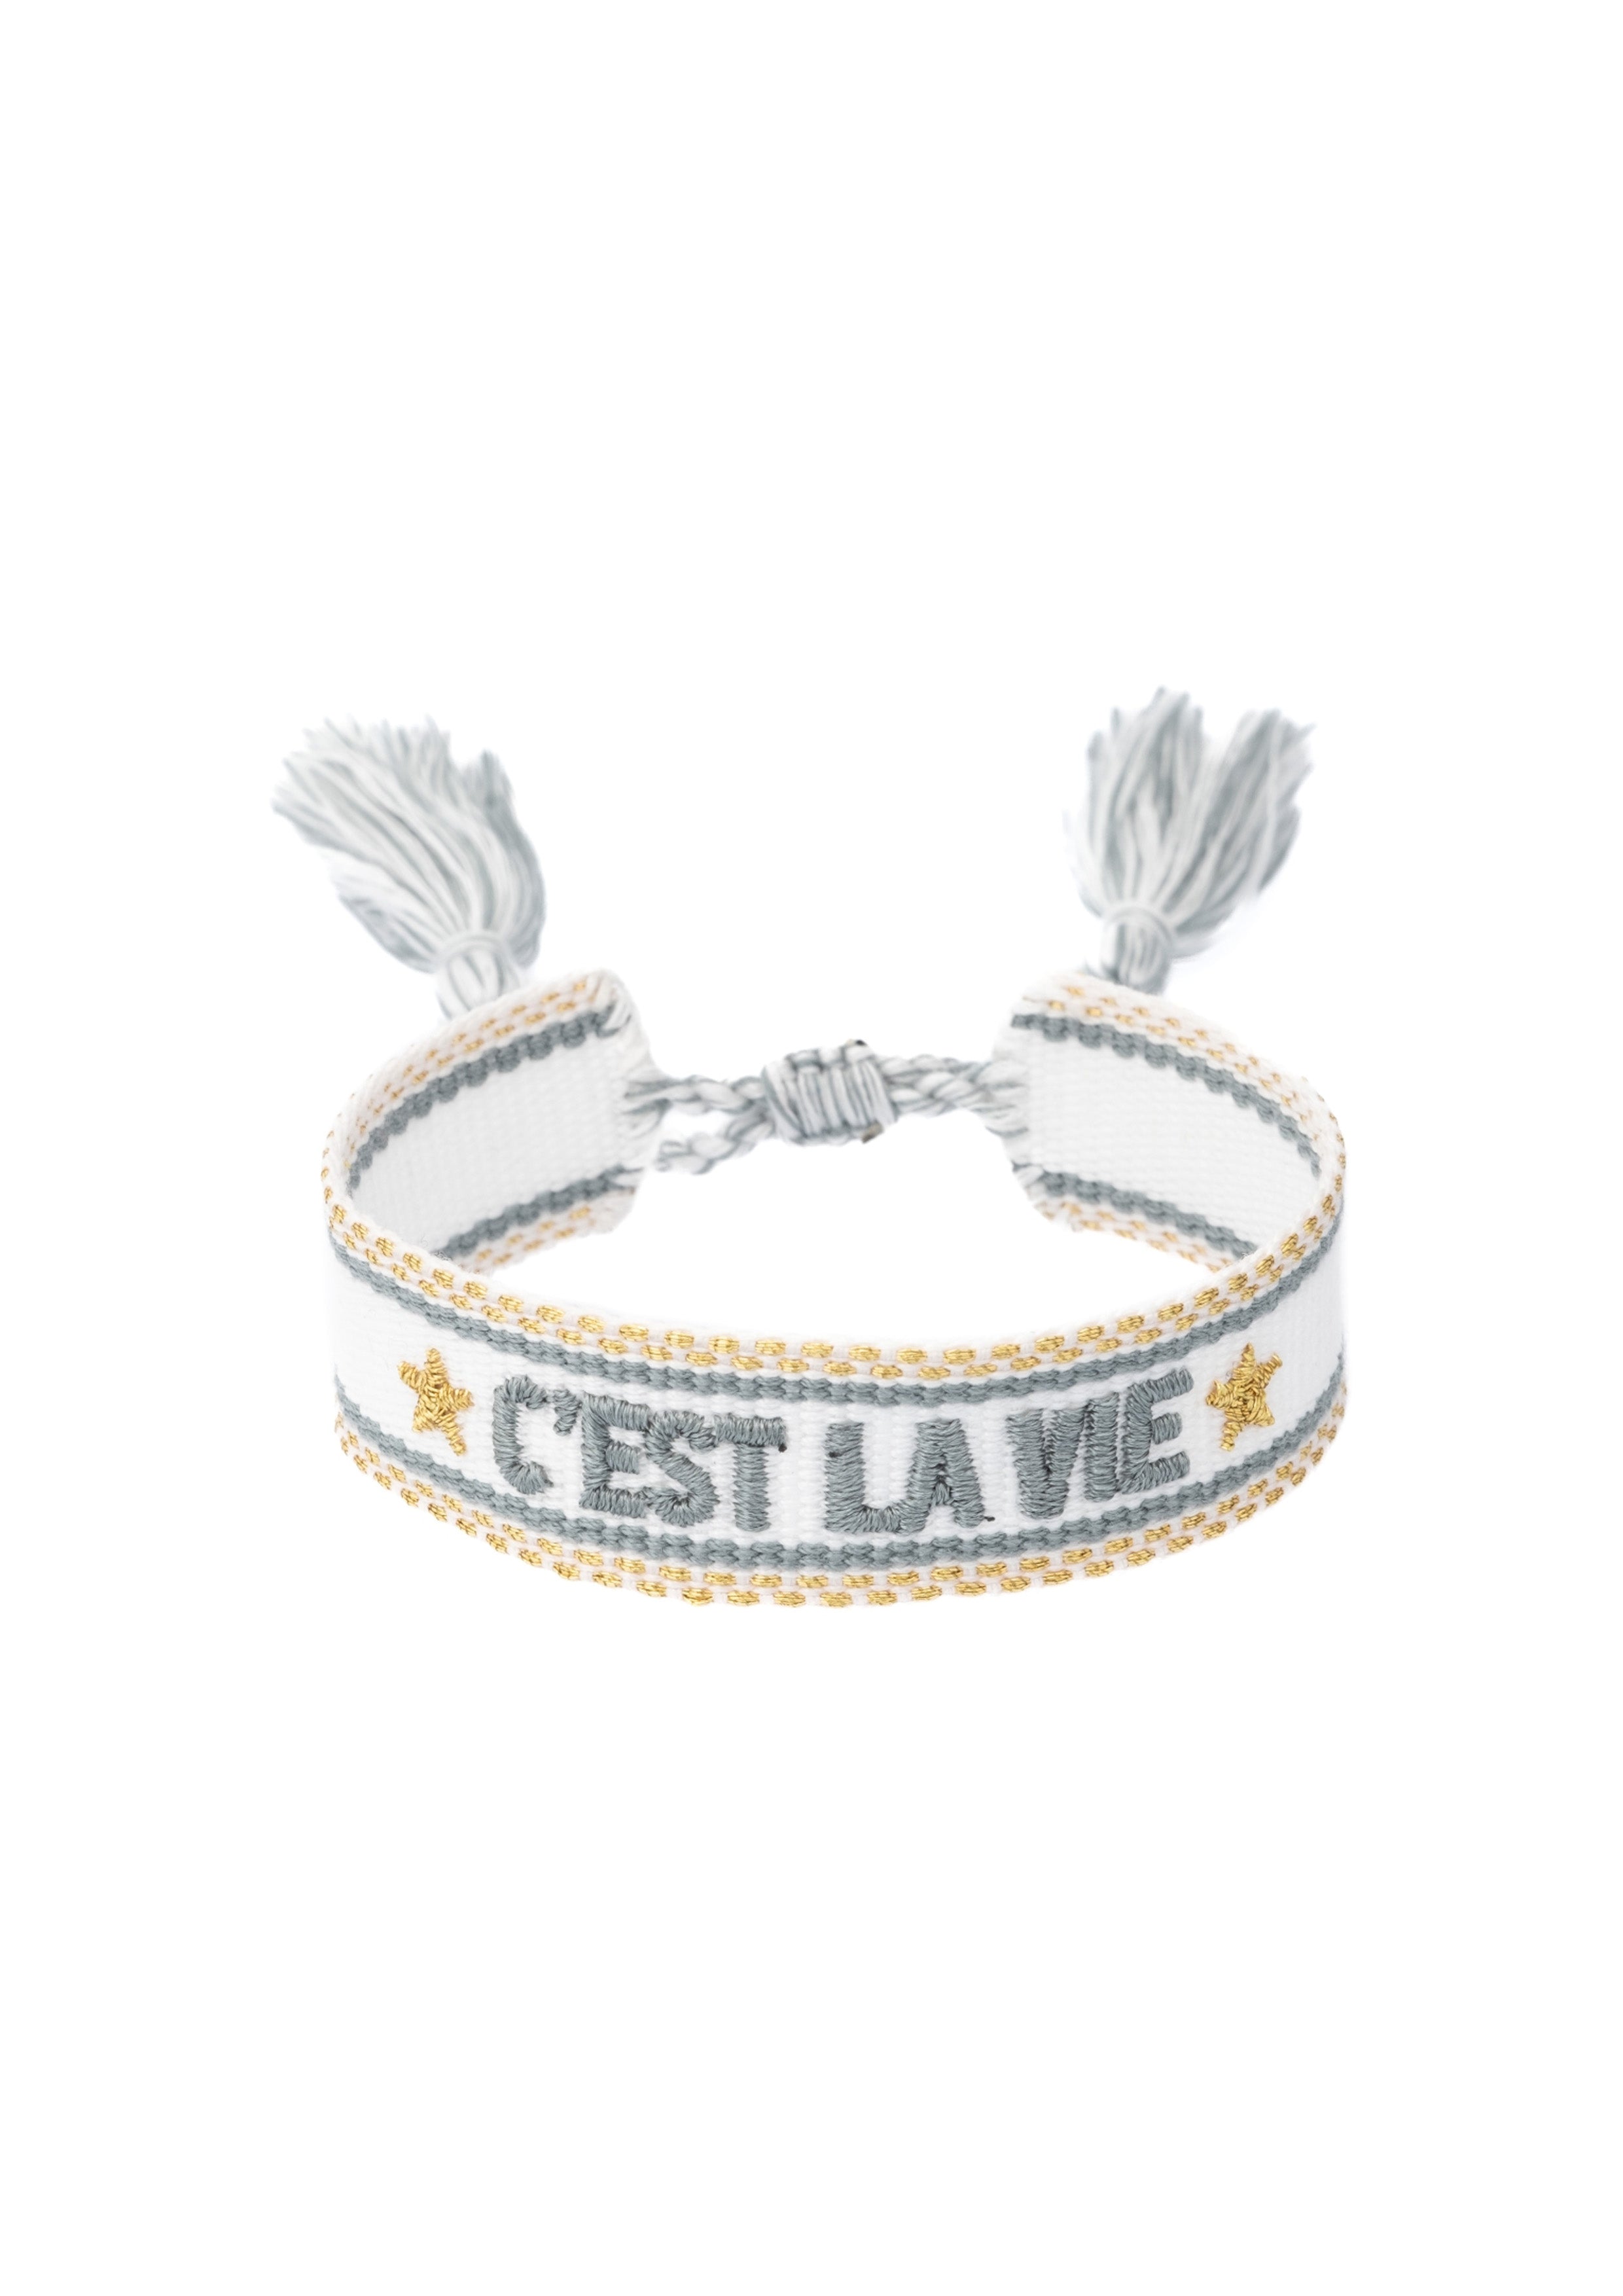 Woven Bracelet "C'est La Vie" White w/Teal & Gold